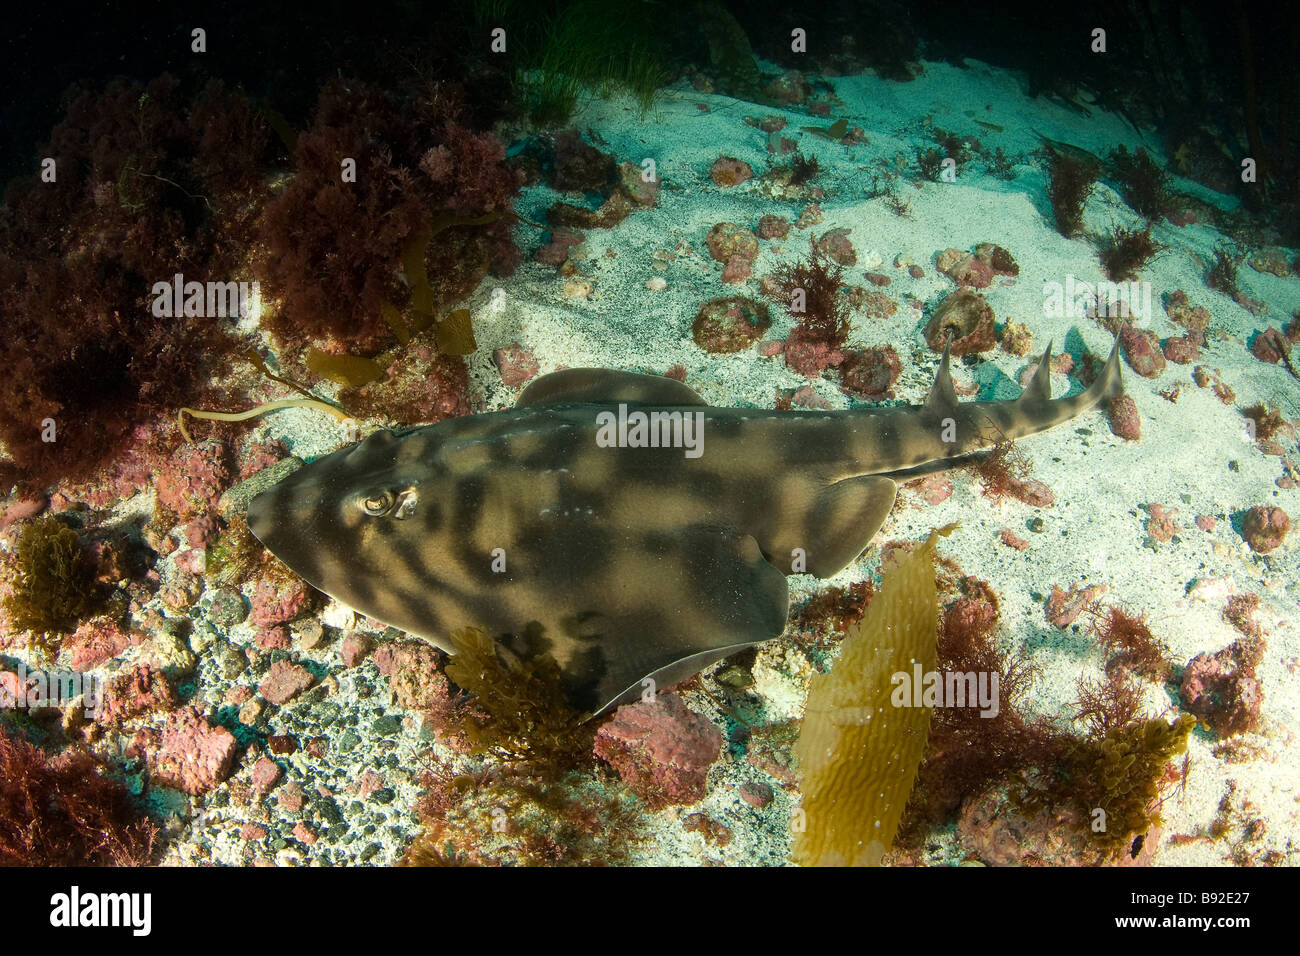 Banded Guitarfish Zapteryx exasperata a type of shark San Benito Island Baja California Mexico Stock Photo